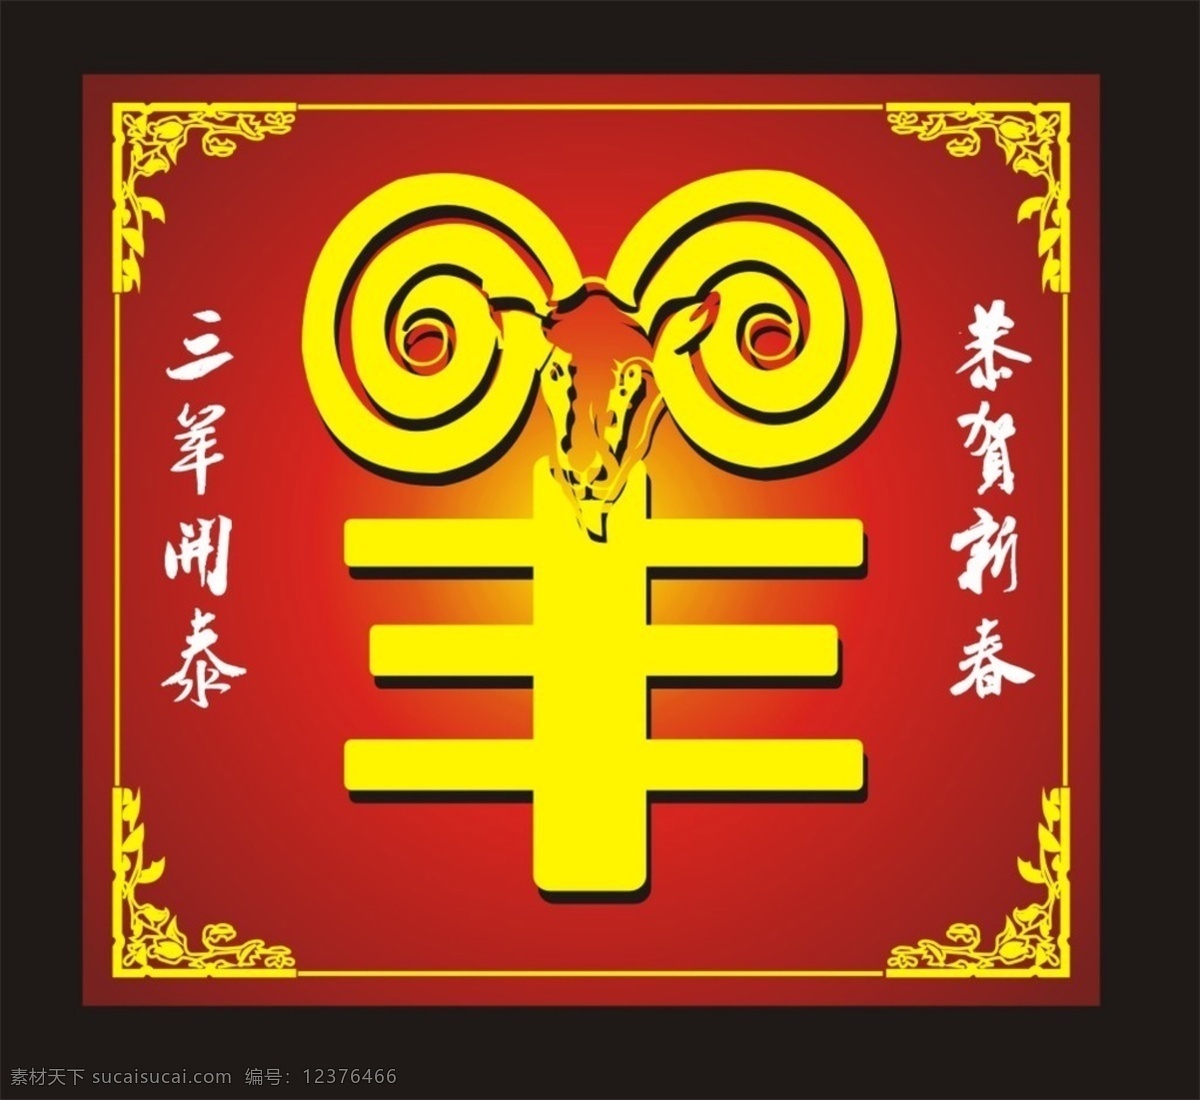 2015 年 贺年 边框 红底 羊年 中国元素 节日素材 2015羊年